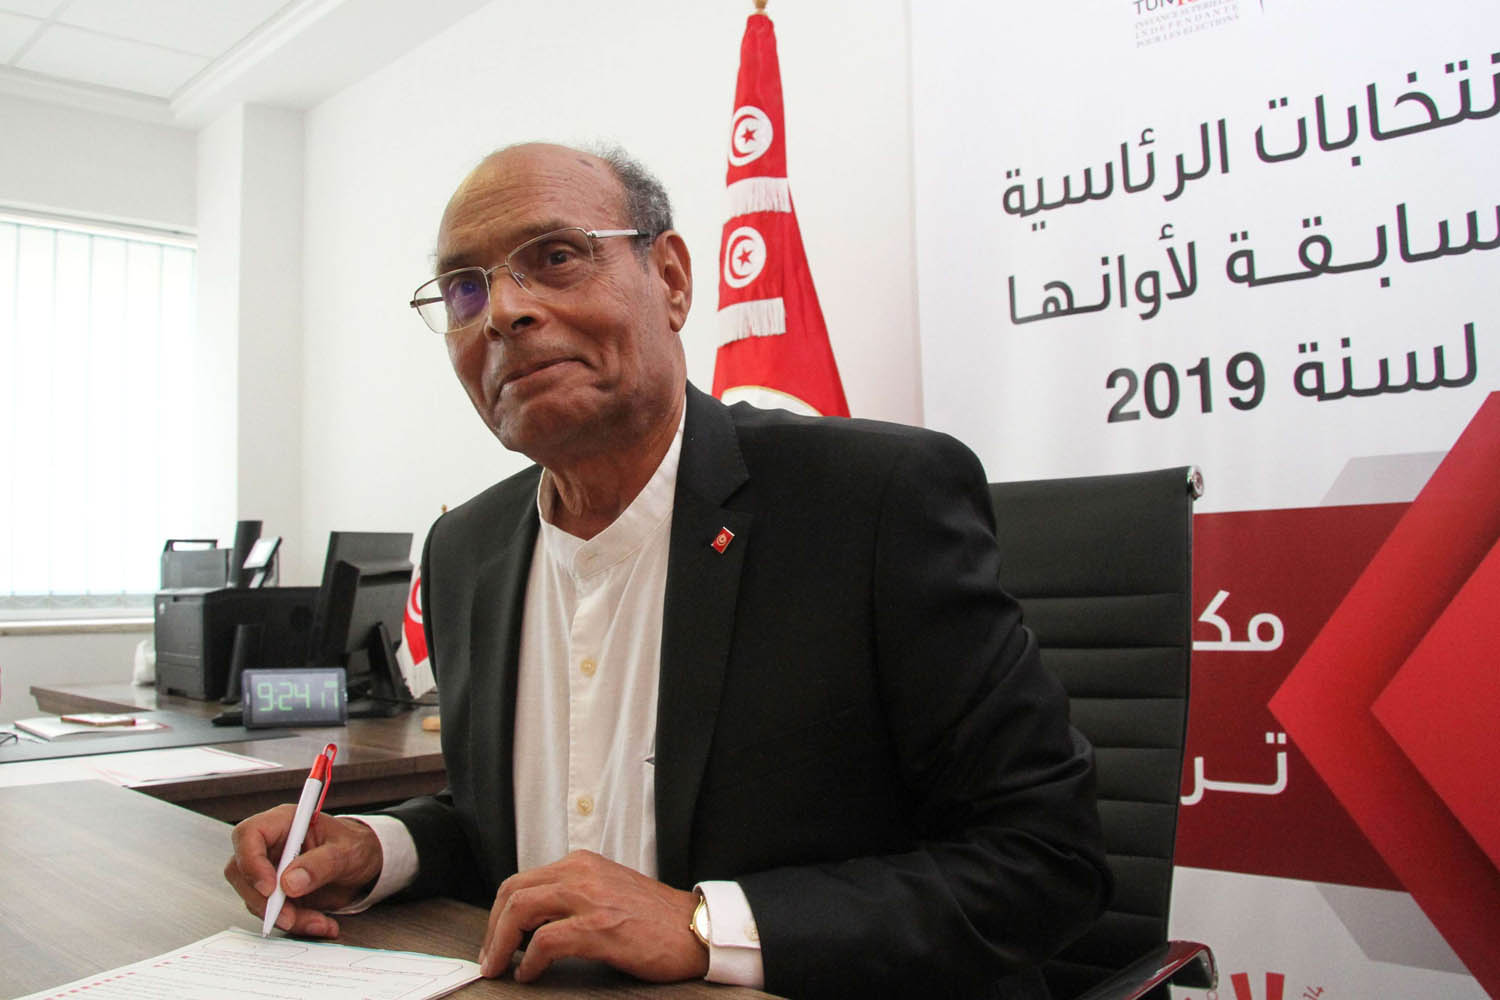 الرئيس التونسي السابق المنصف المرزوقي يقدم أوراق ترشيحه